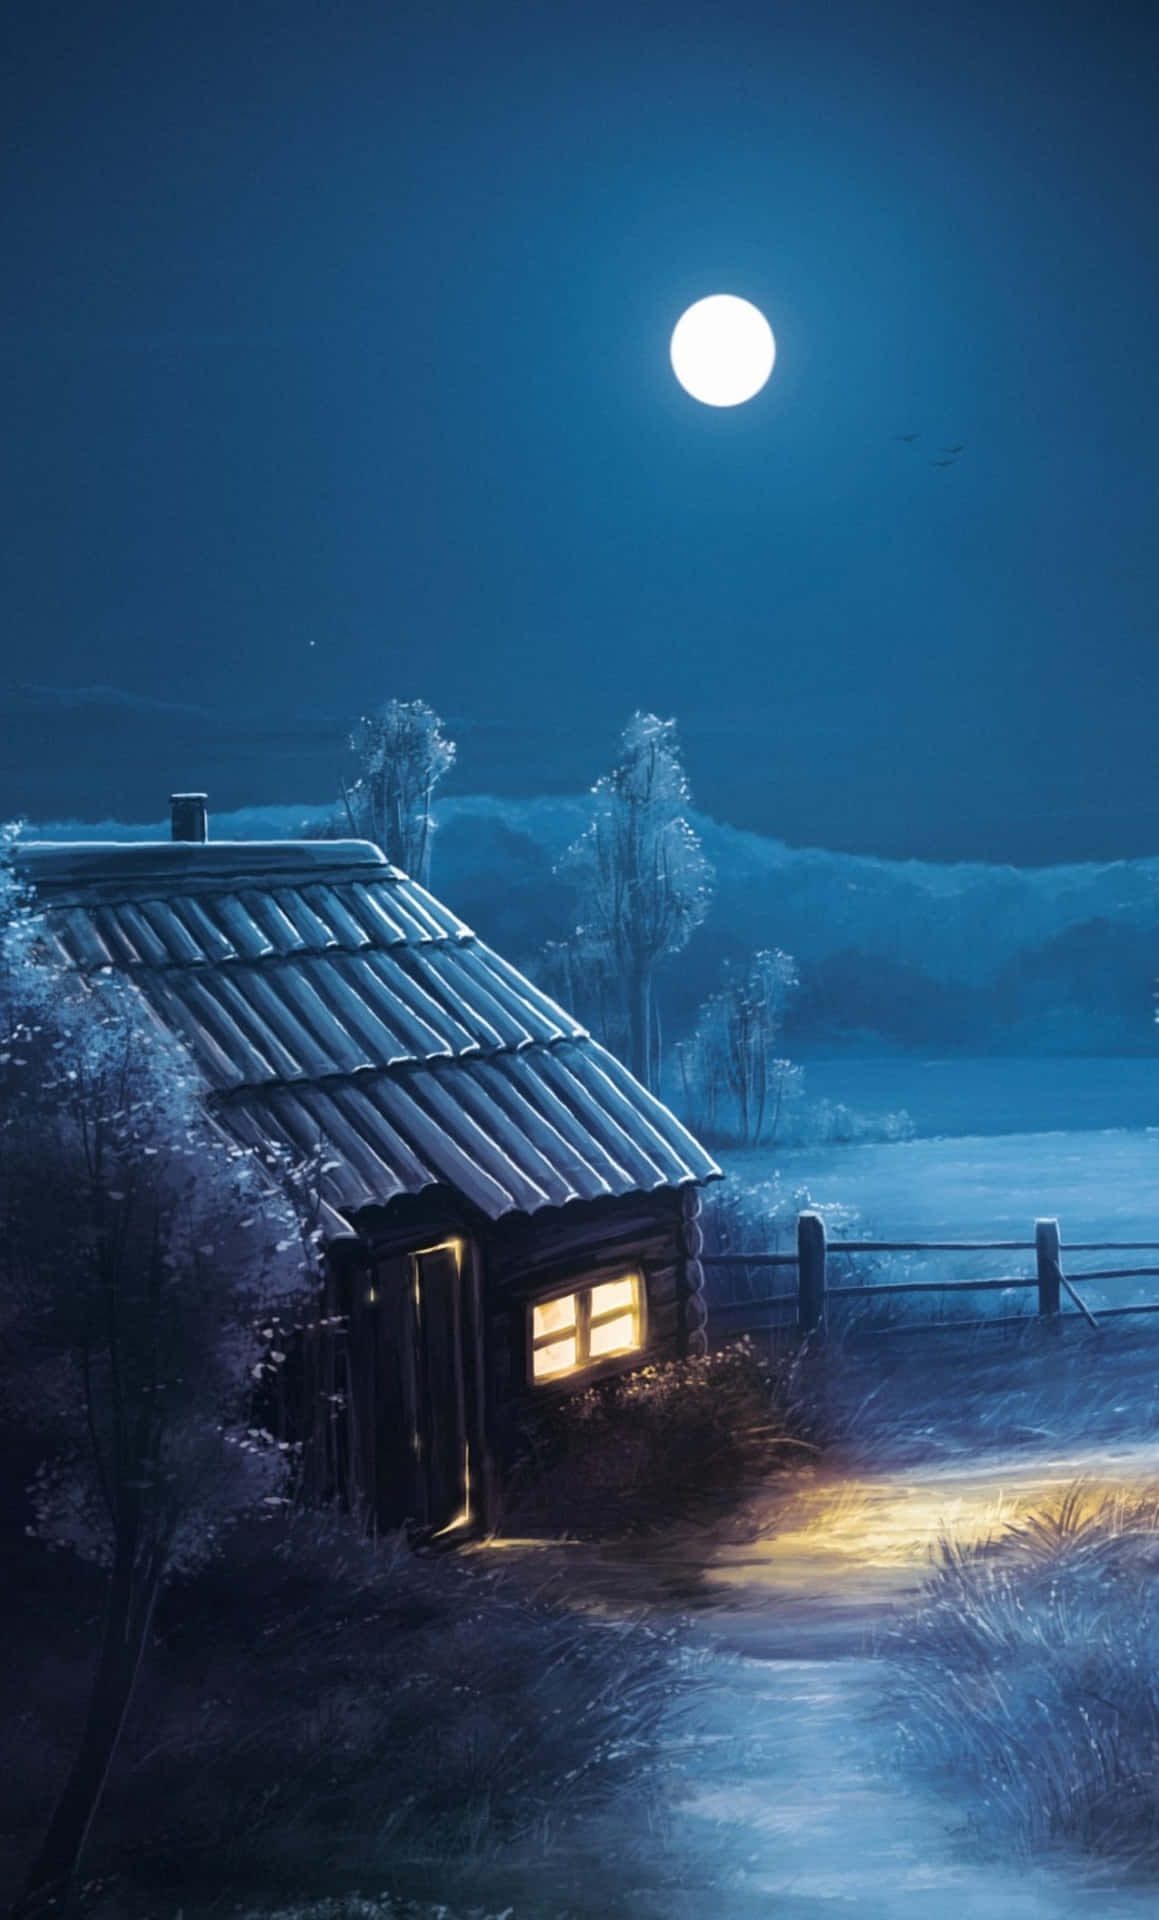 Måneog Stjerner Over En Hytte På Iphone. Wallpaper